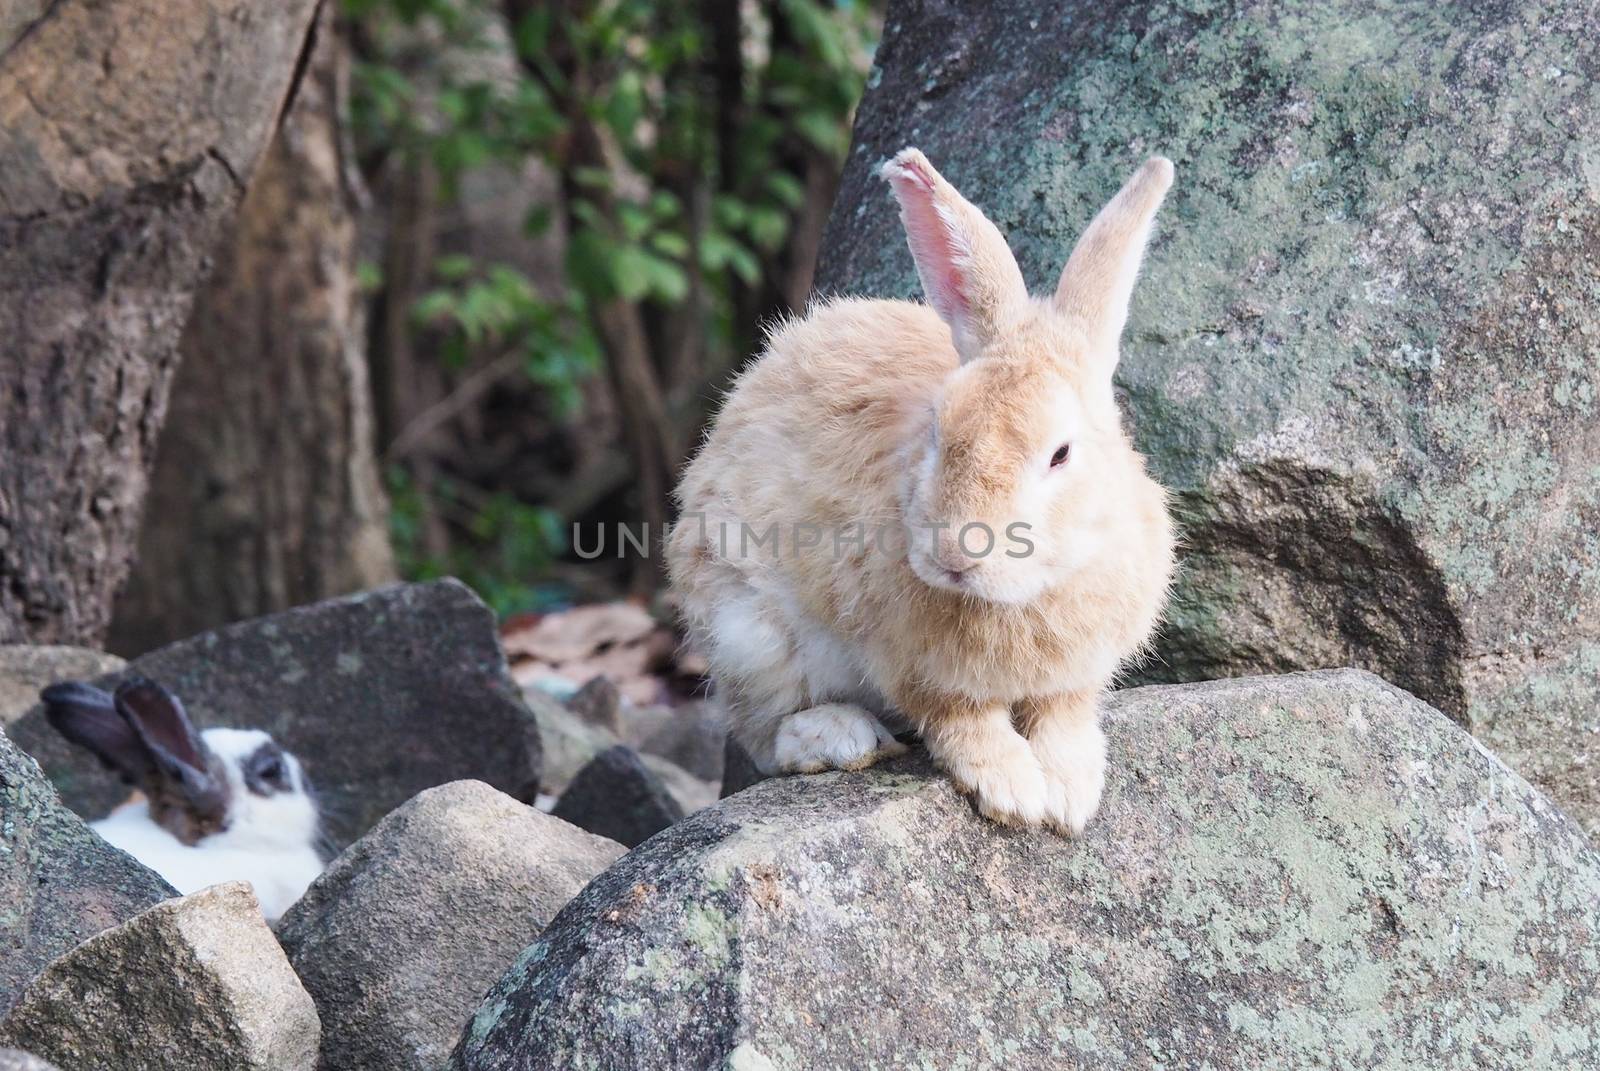 Long-eared rabbit is suffering from skin disease. Ringworm by kittima05